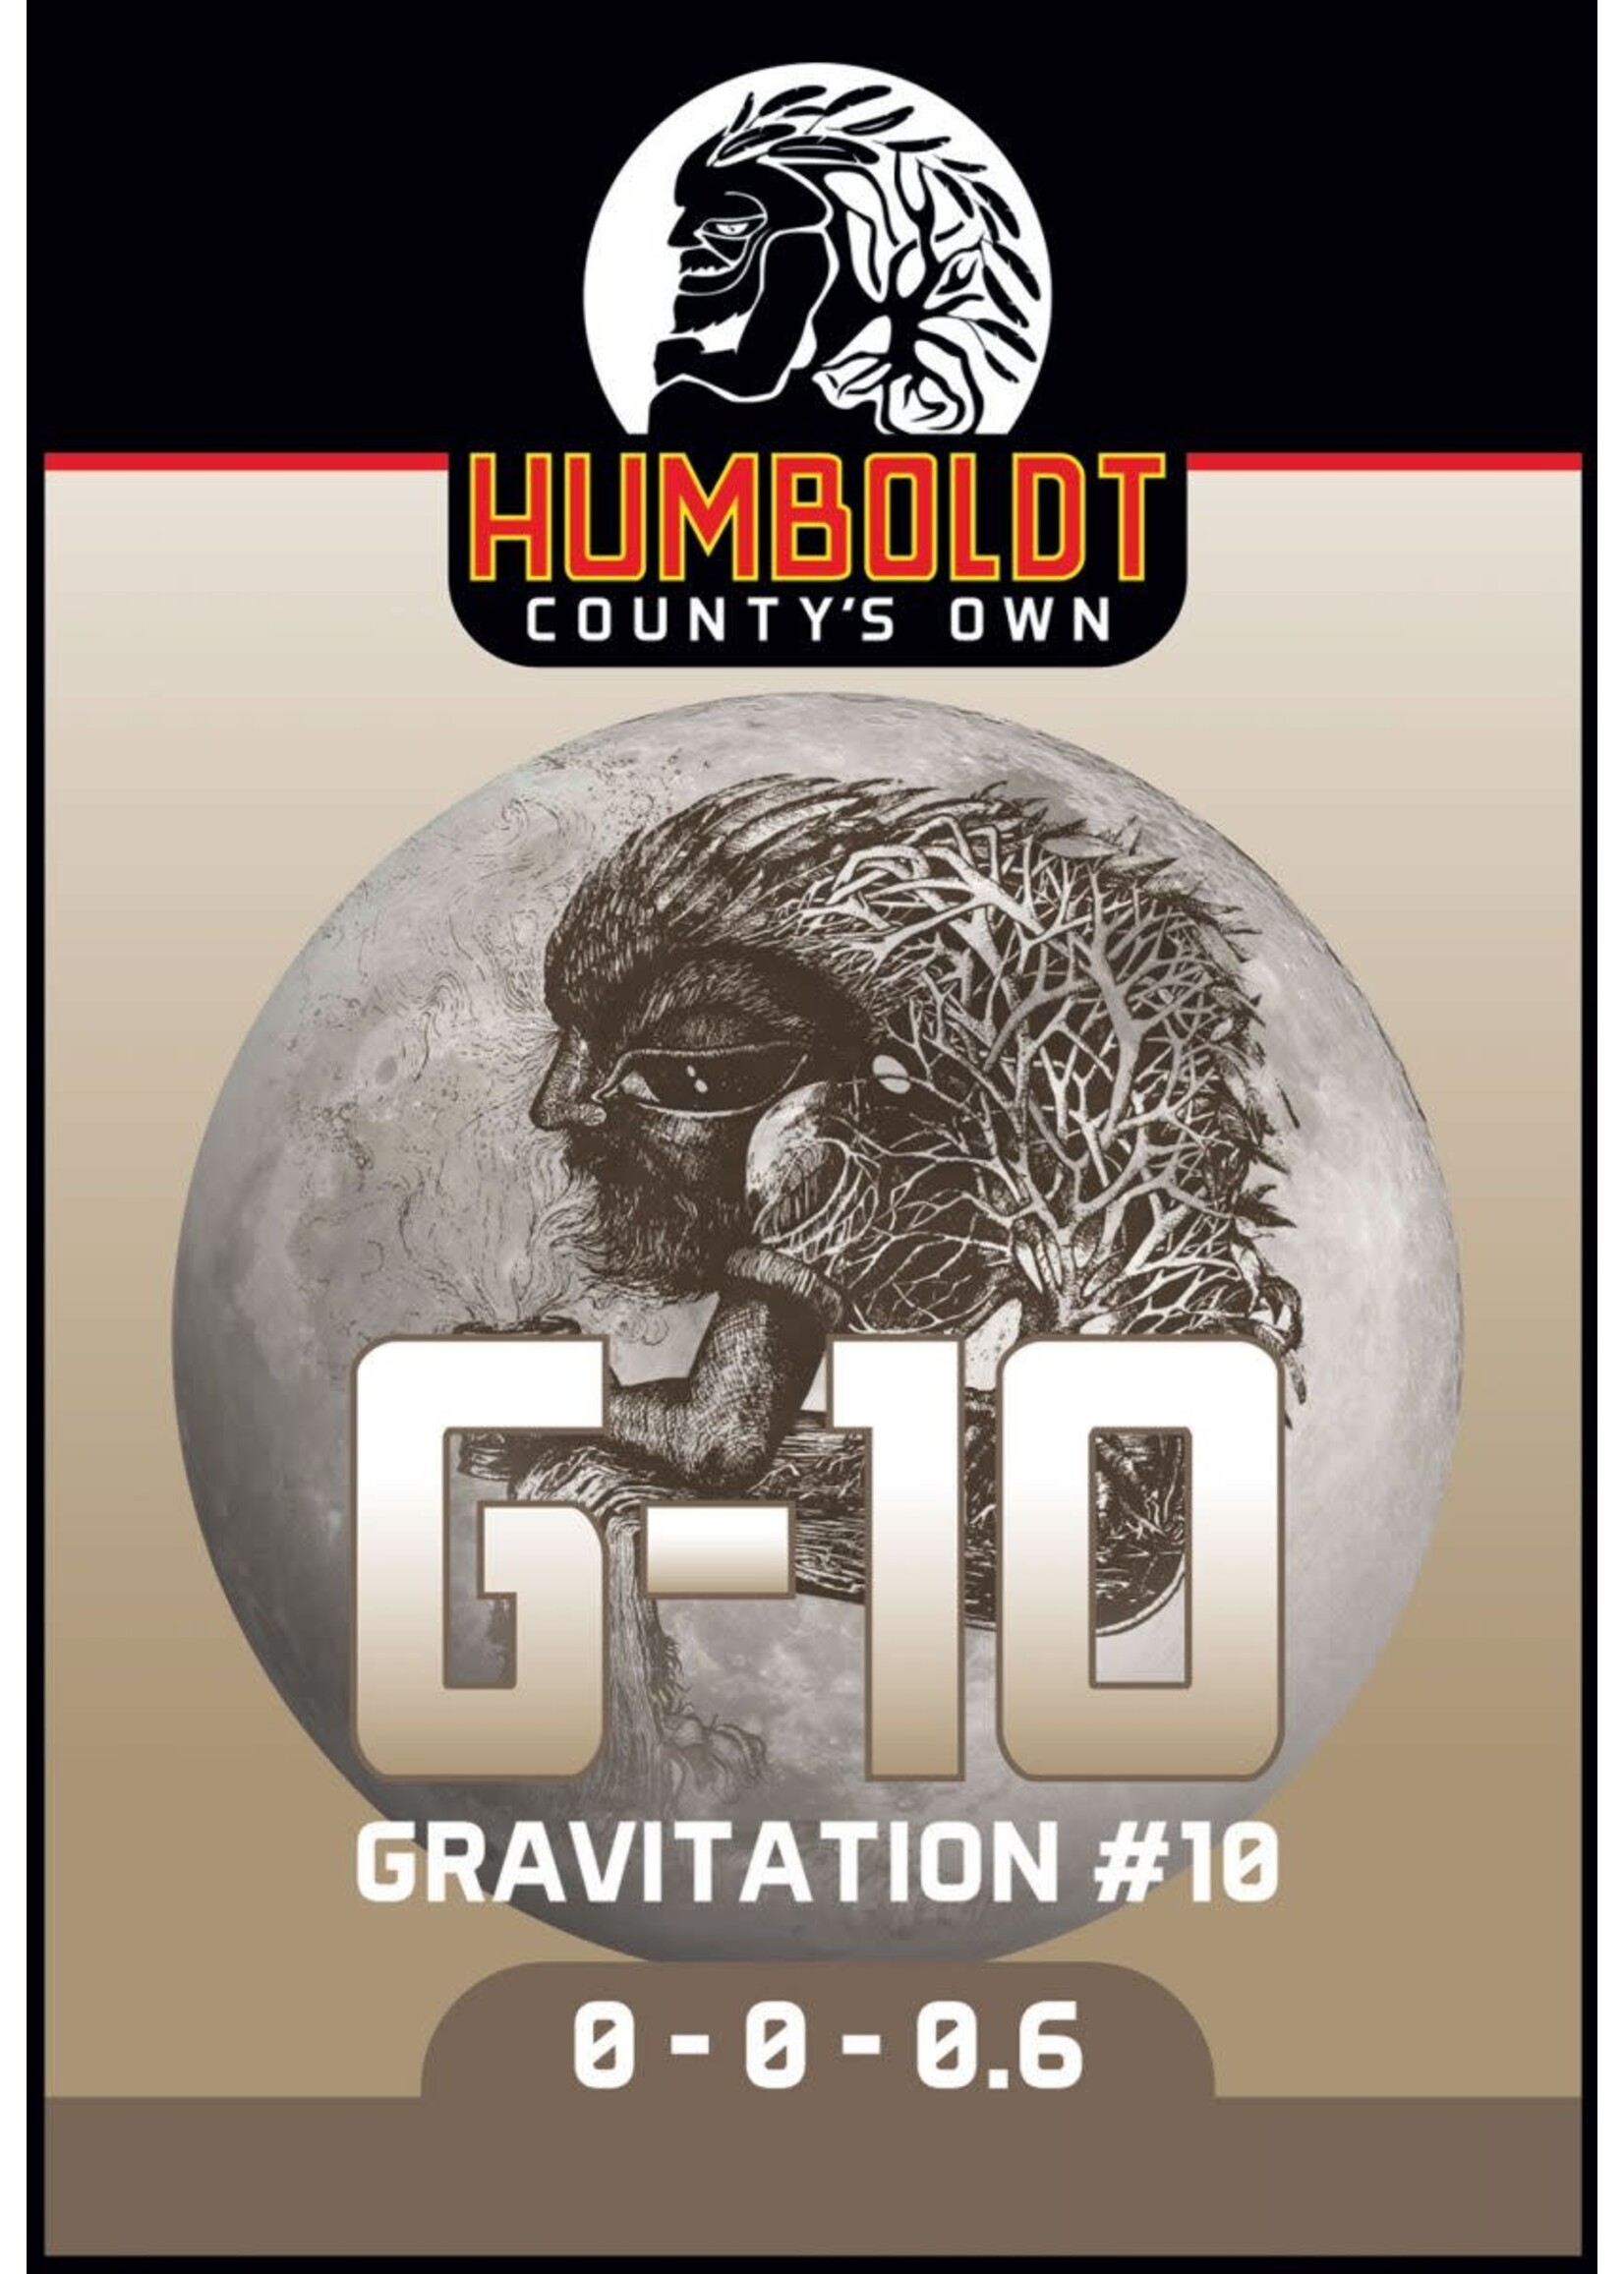 Humboldt County's Own Humboldt County's Own G10